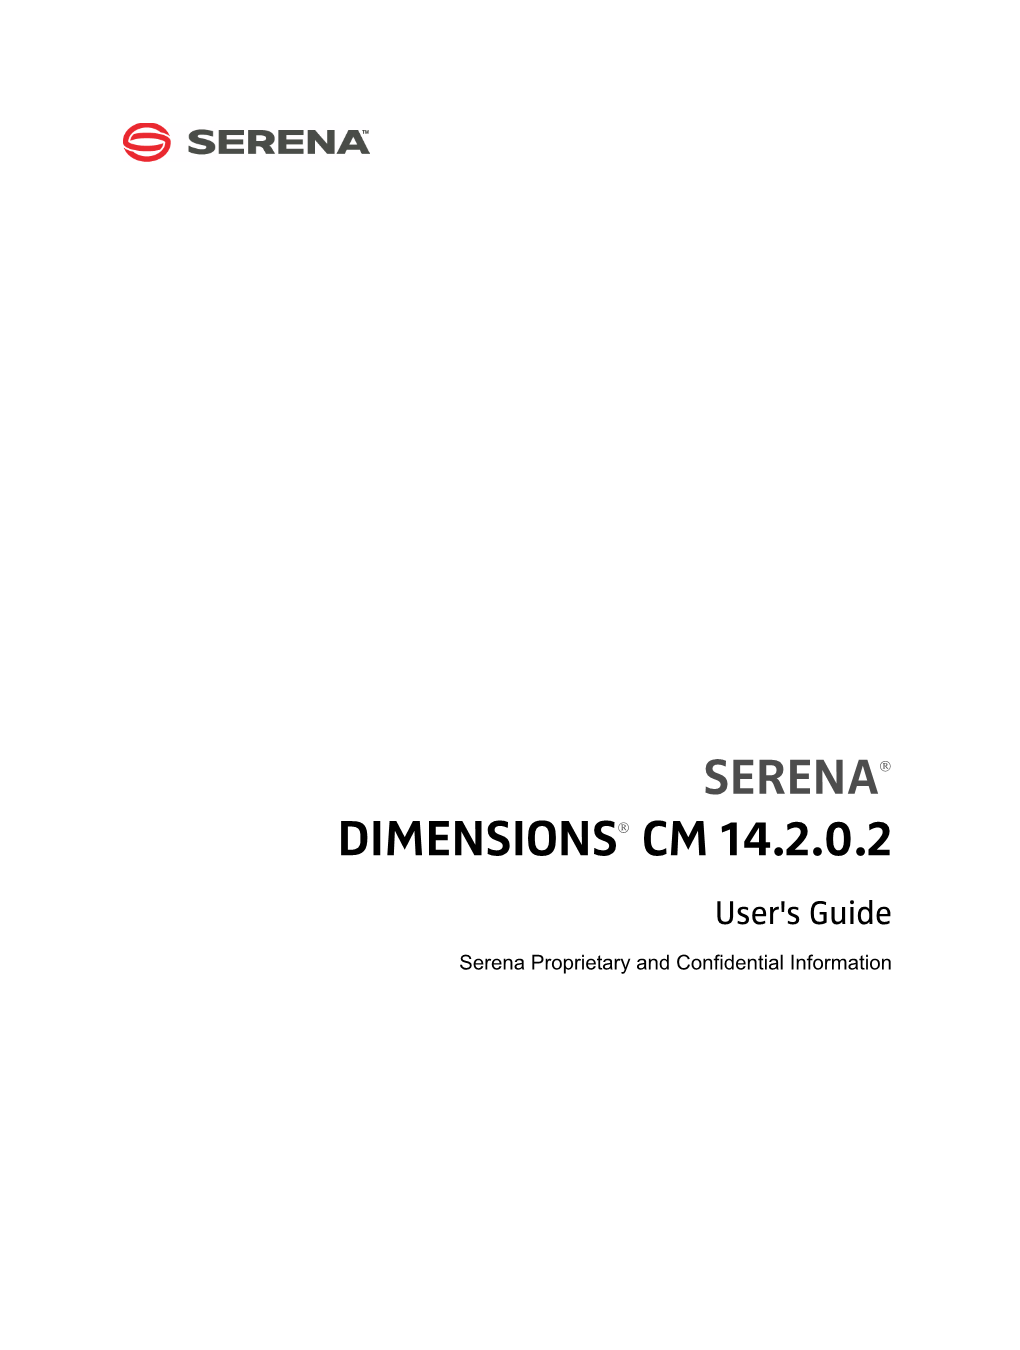 Serena Dimensions CM User's Guide